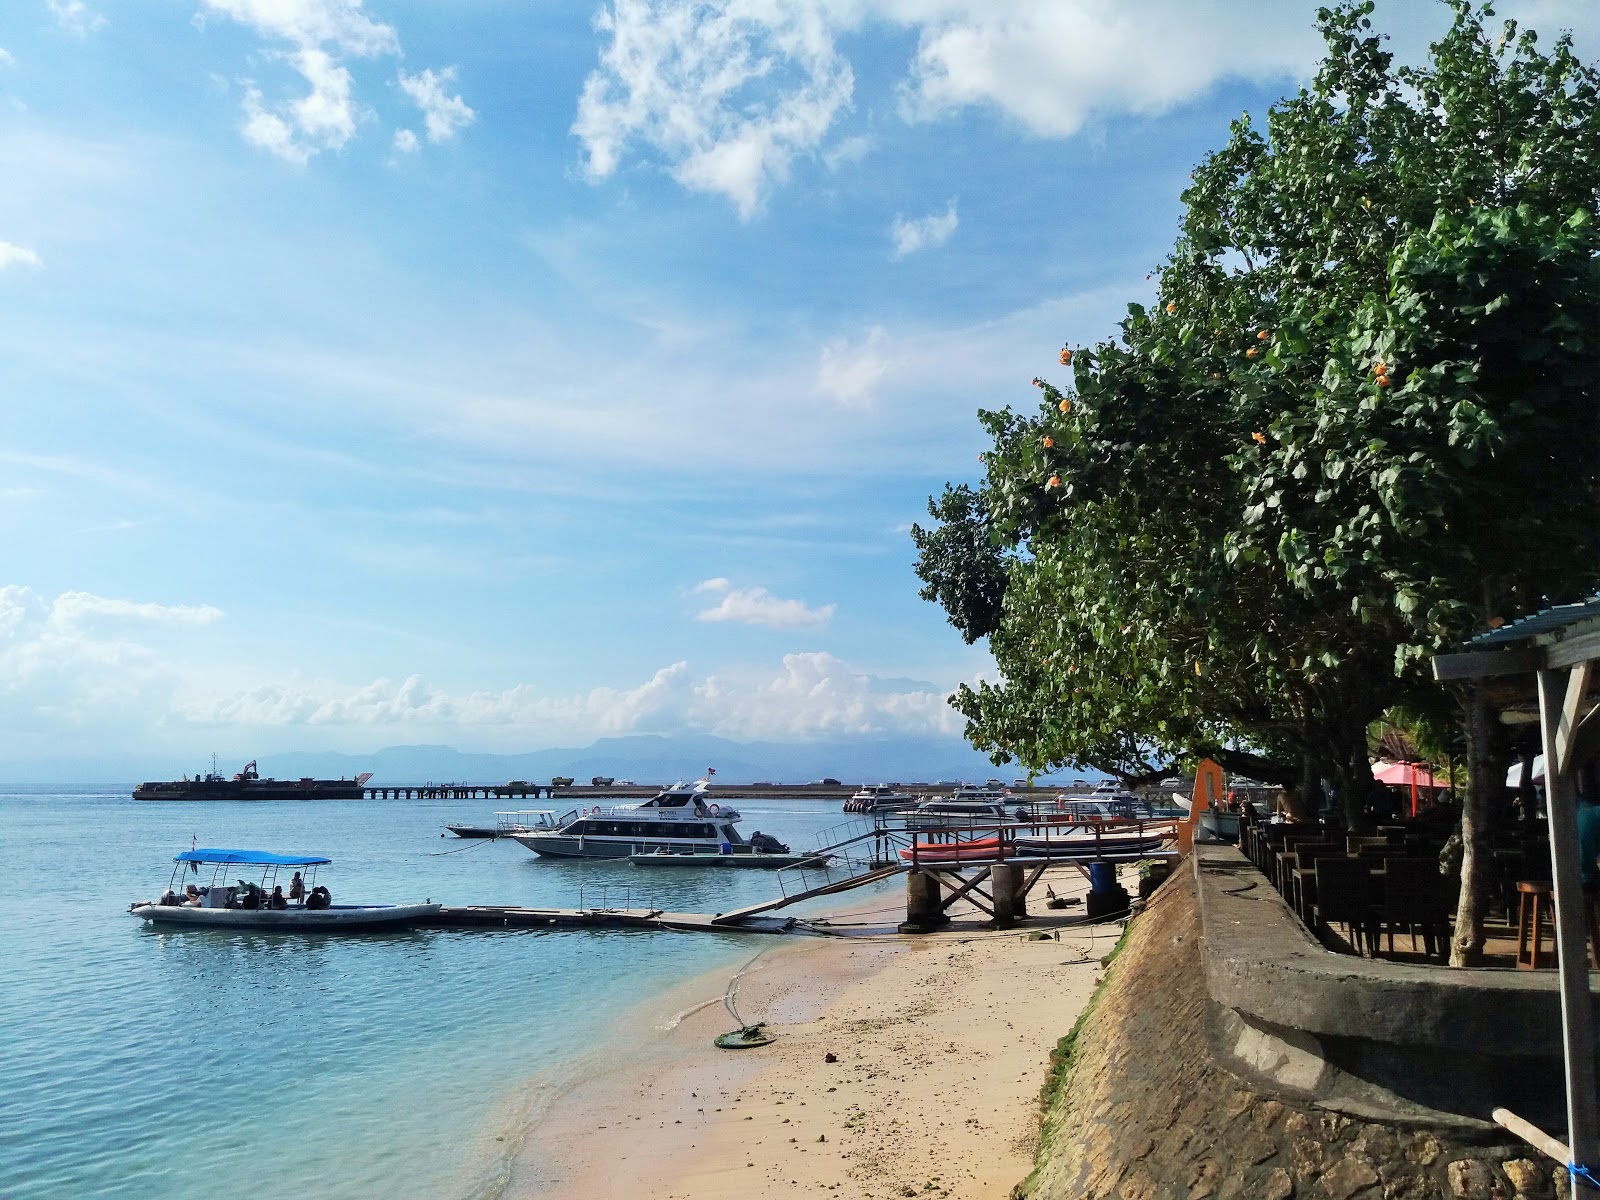 Photo de Toya Paken Beach - endroit populaire parmi les connaisseurs de la détente